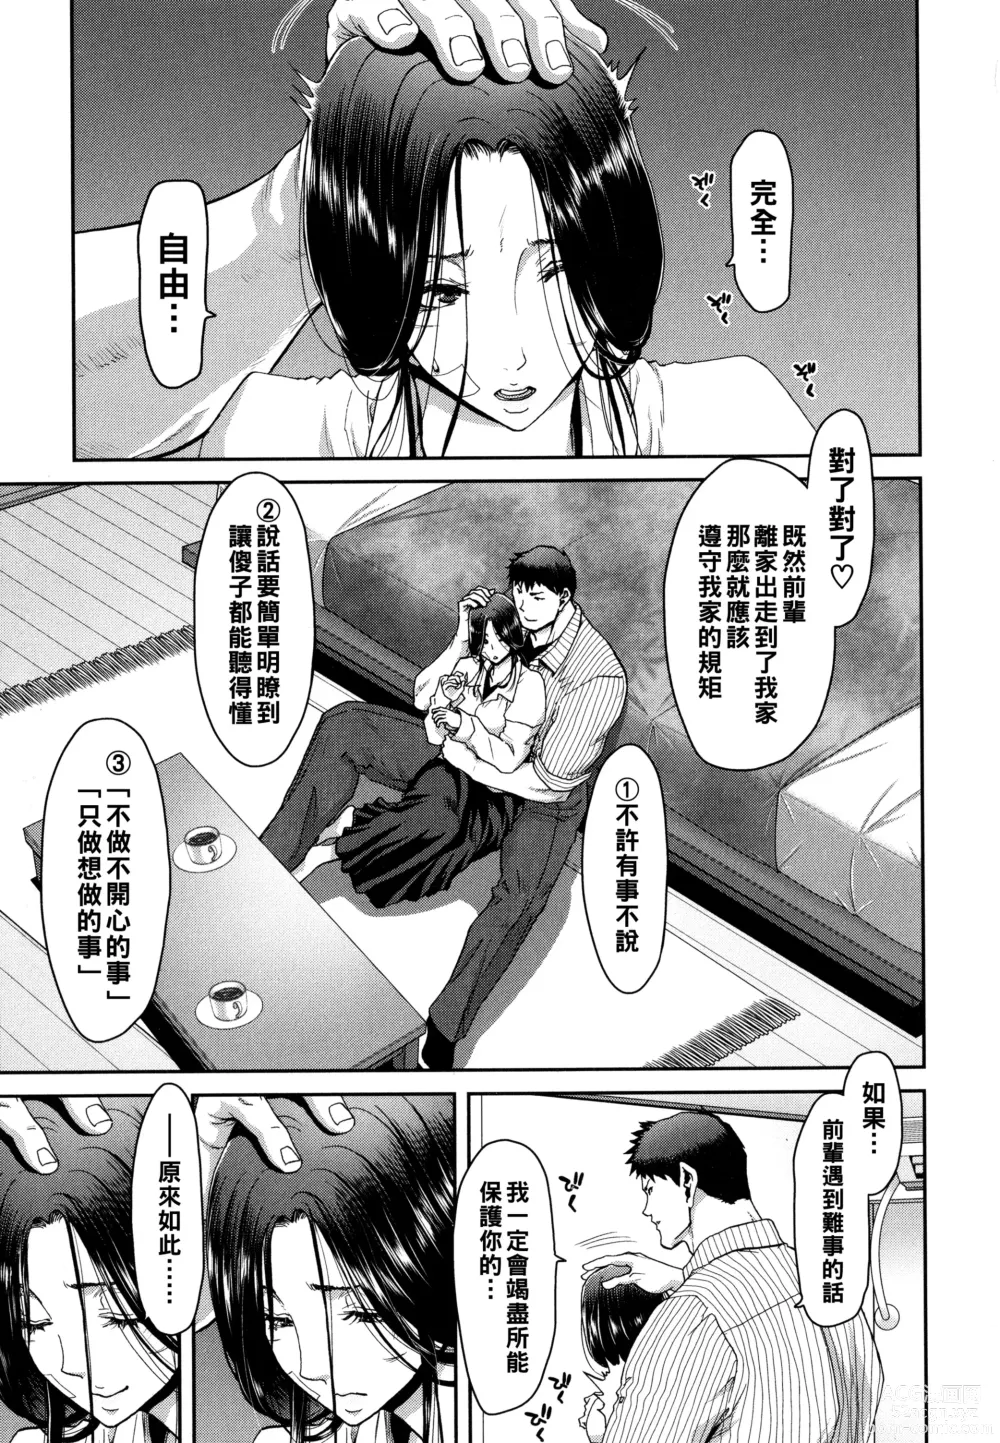 Page 13 of manga Iede Onna o Hirottara - When I picked up a runaway girl. + Melonbooks Gentei Tokuten   Otona no Iede Gojitsudan Sono Ato no Arisa to Akira